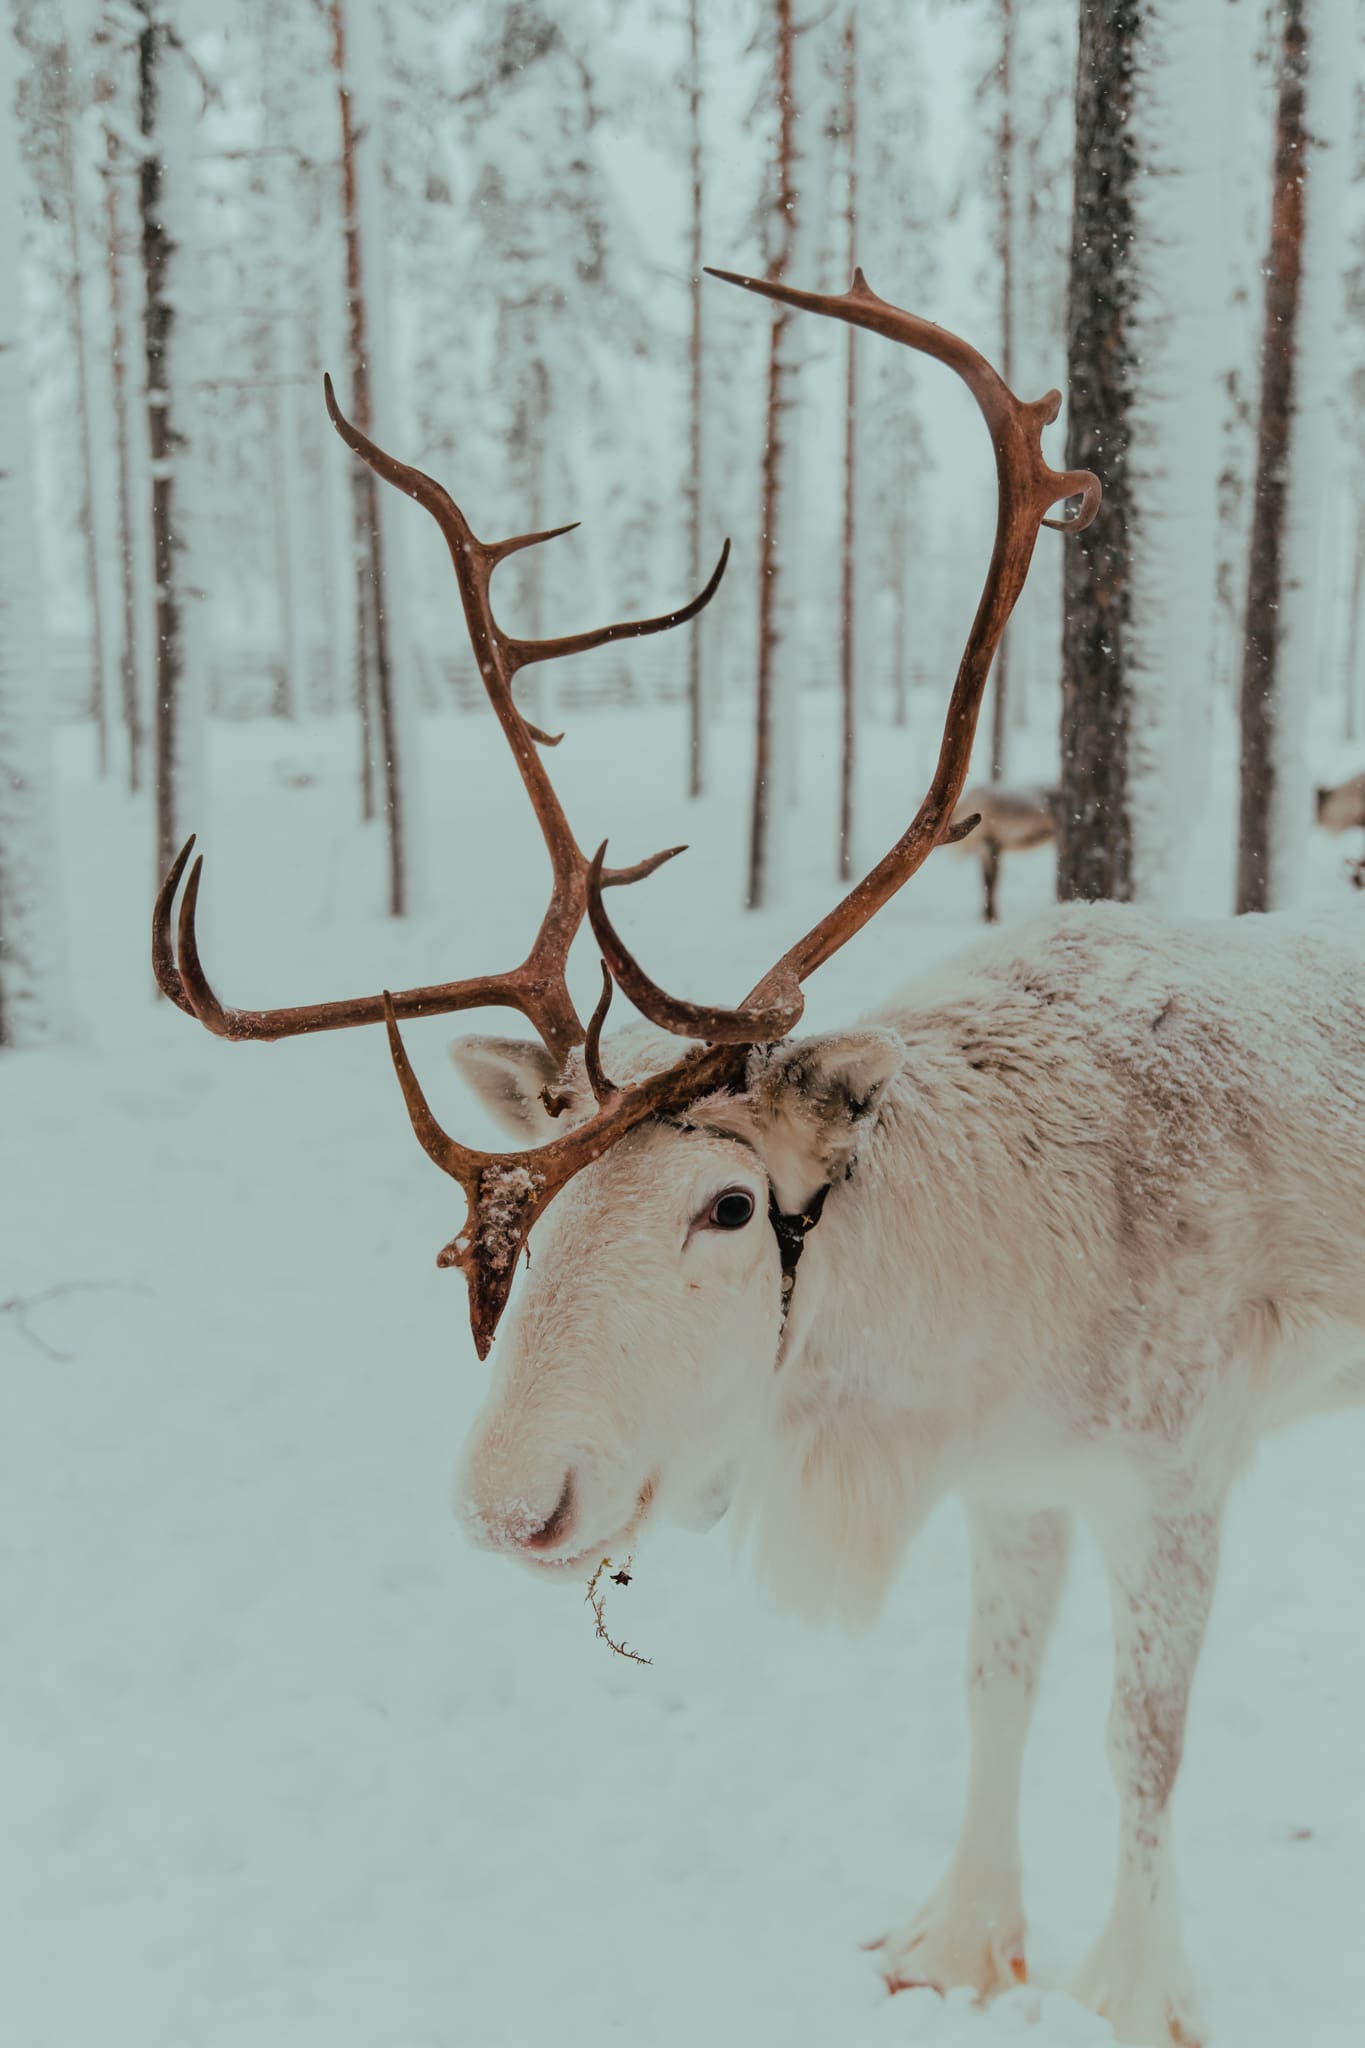 Reizen naar Lapland: Wat is de beste maand?